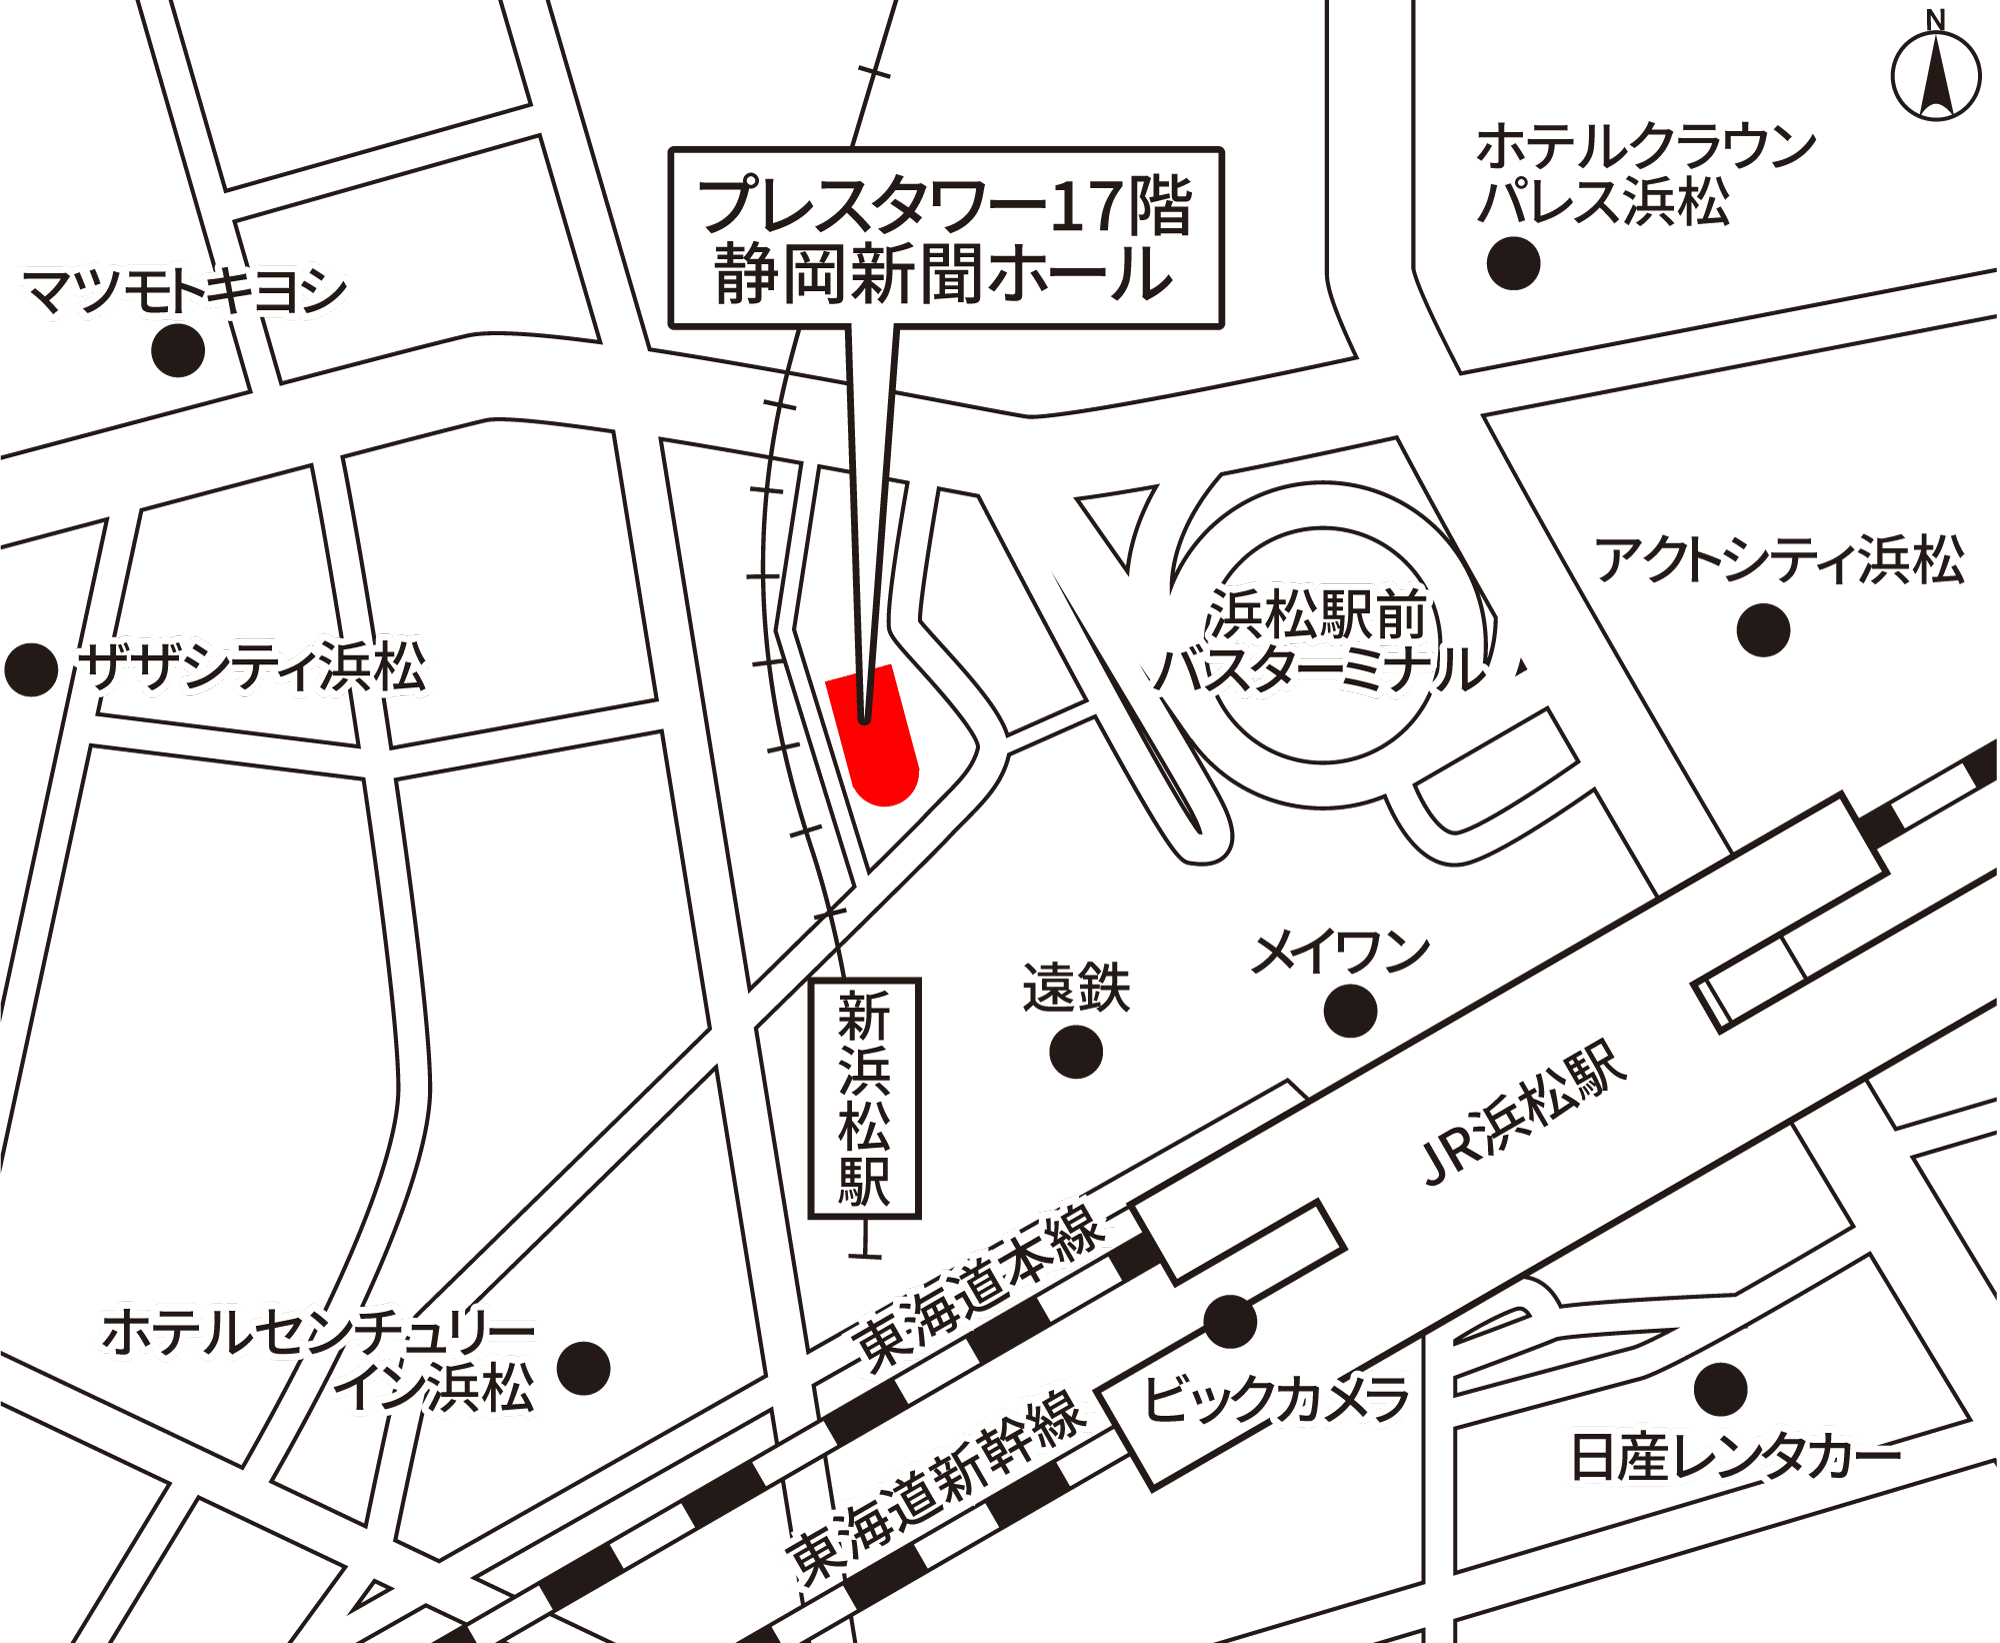 プレスタワー17階 静岡新聞ホール 地図